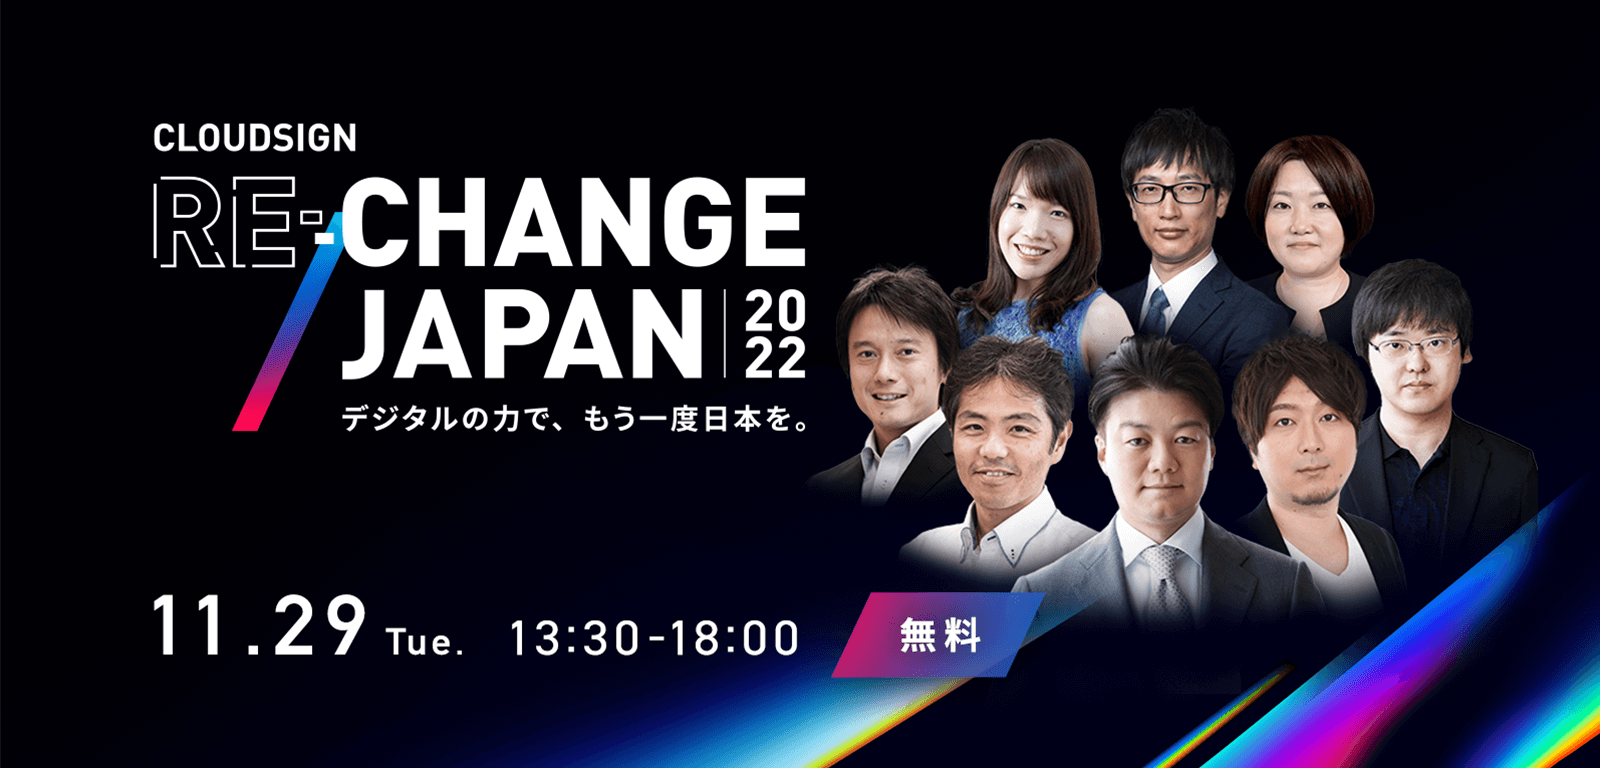 企業組織を変革するDXの手法論が学べるイベント「RE:CHANGE JAPAN 2022」を開催